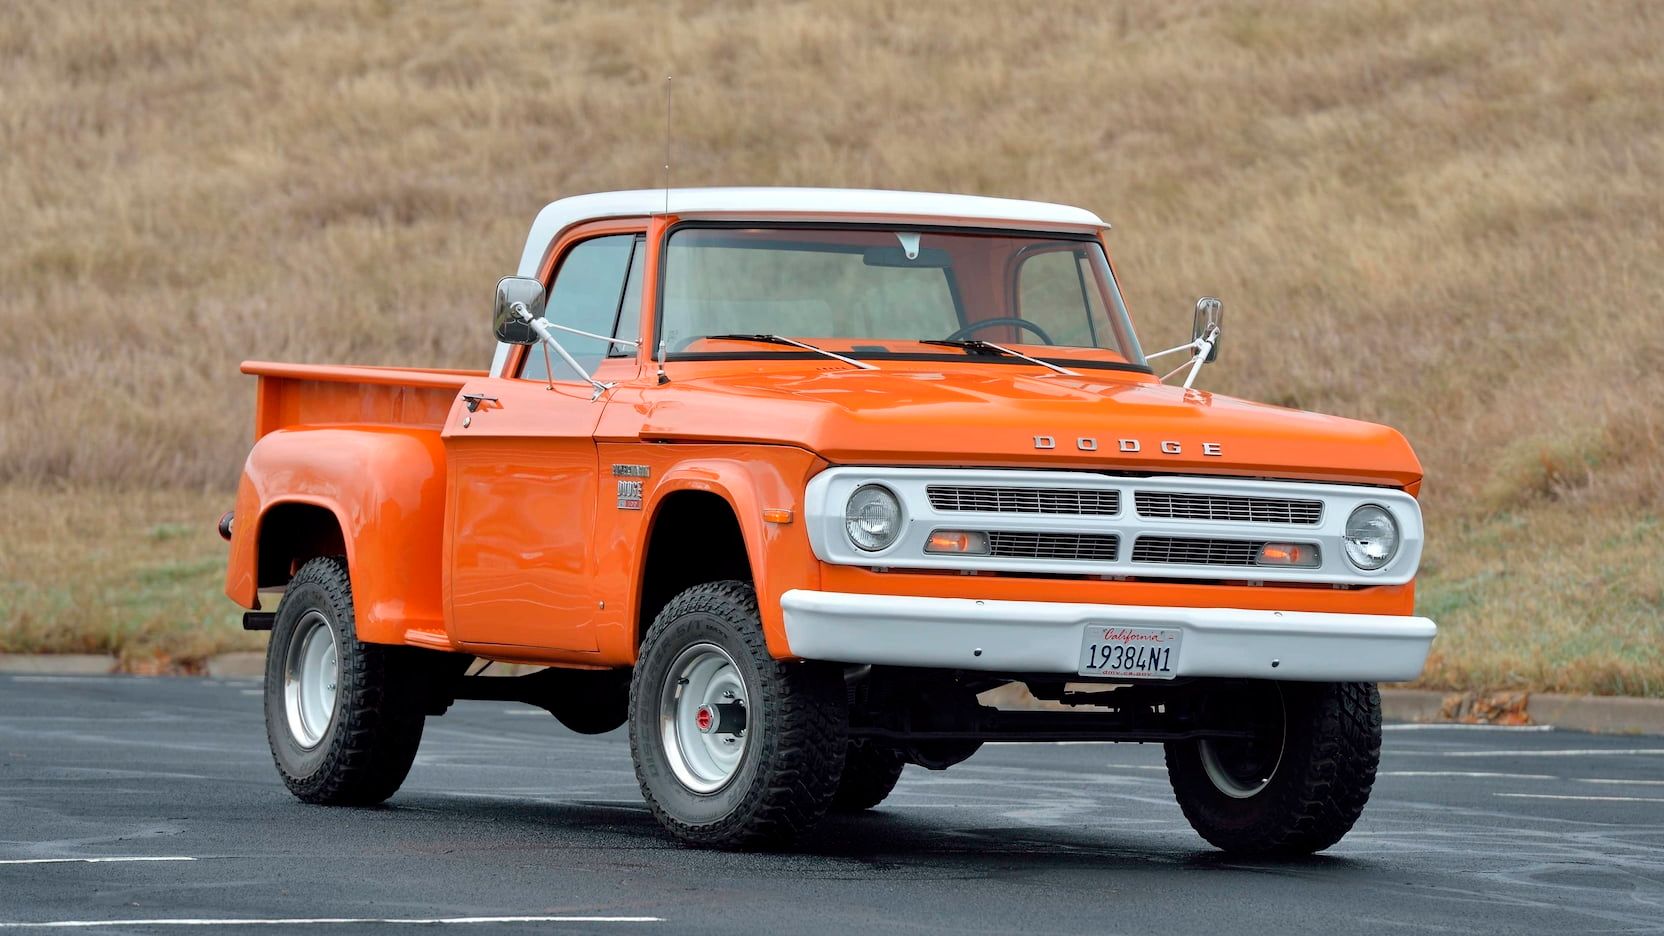 1970 Dodge W100 Power Wagon, orange